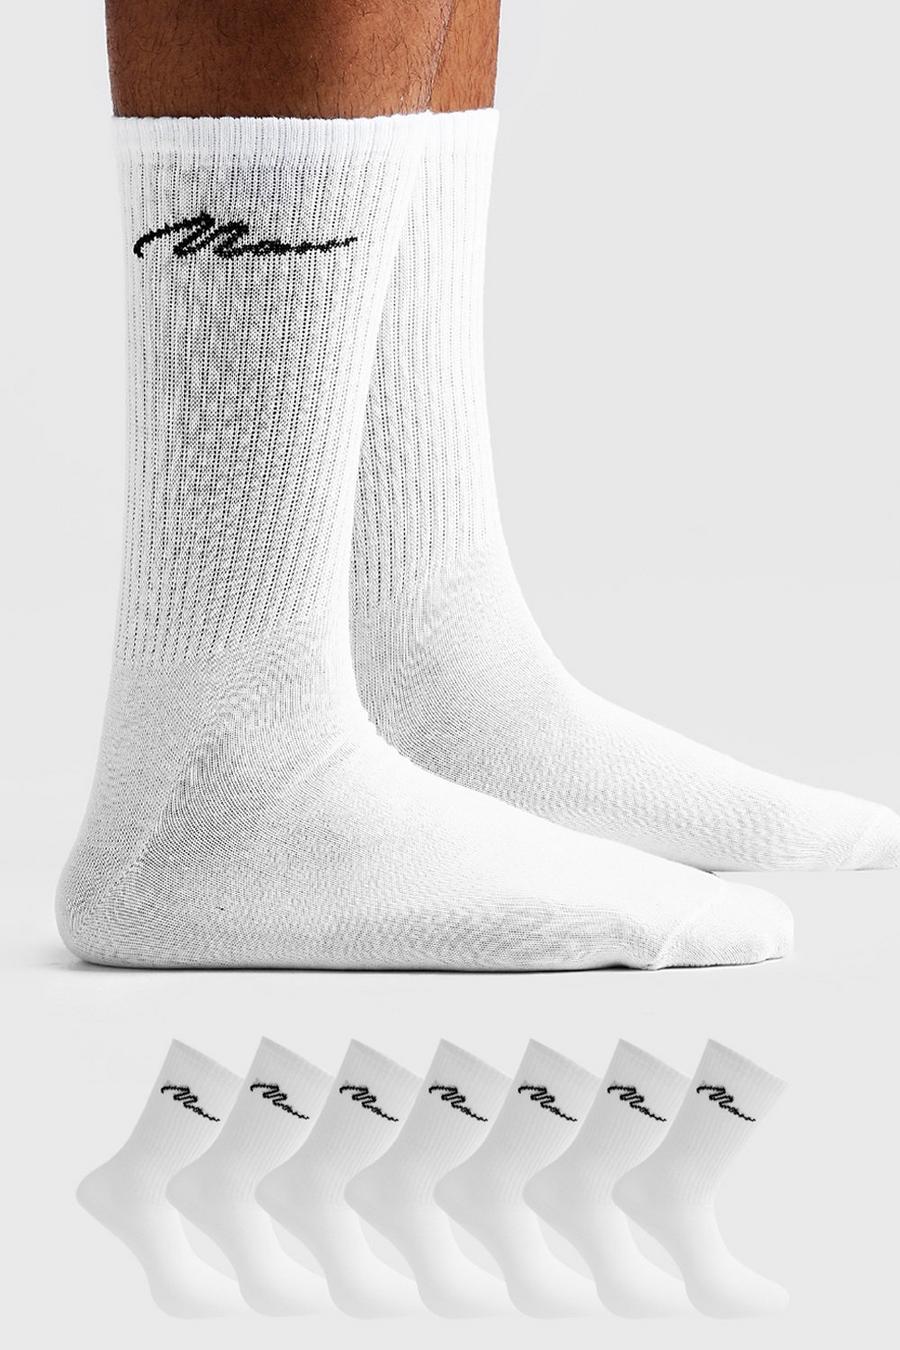 Lot de 7 paires de chaussettes sport - MAN, Blanc